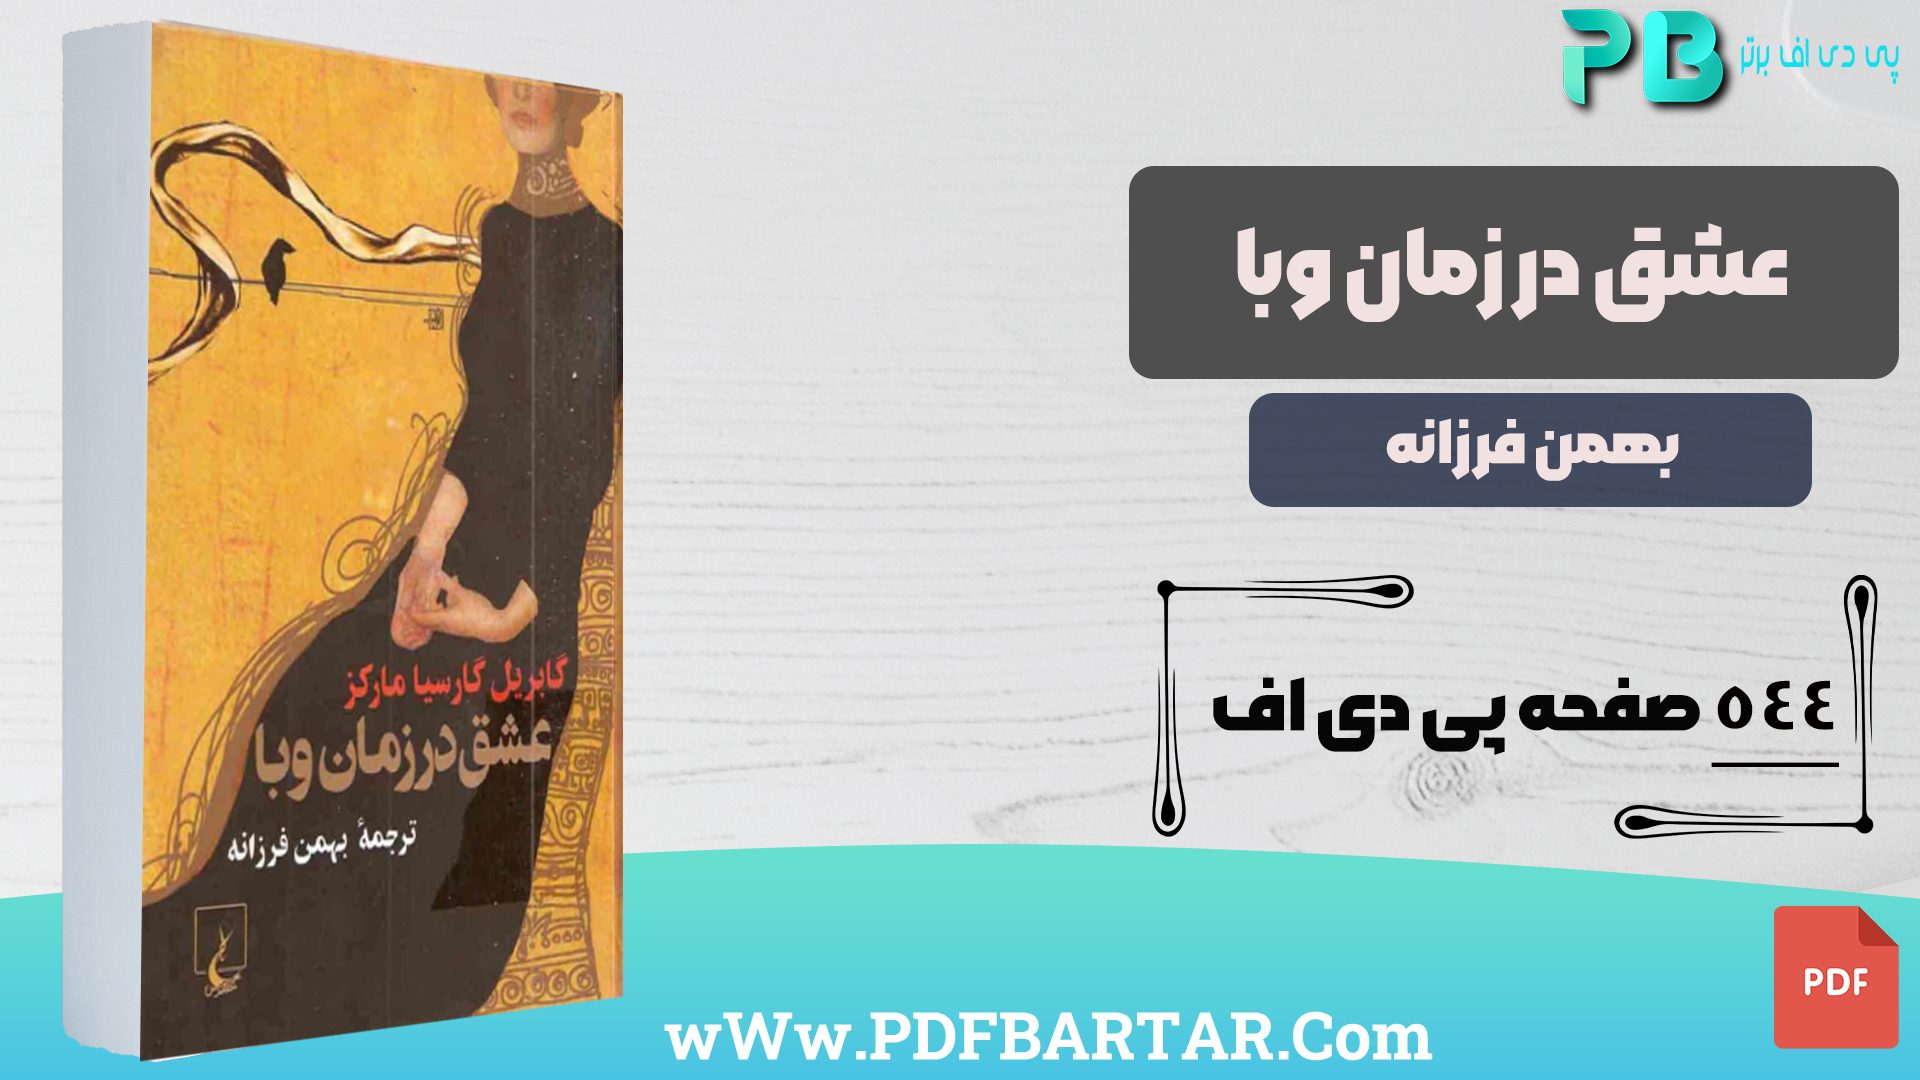 دانلود پی دی اف کتاب عشق در زمان وبا بهمن فرزانه PDF